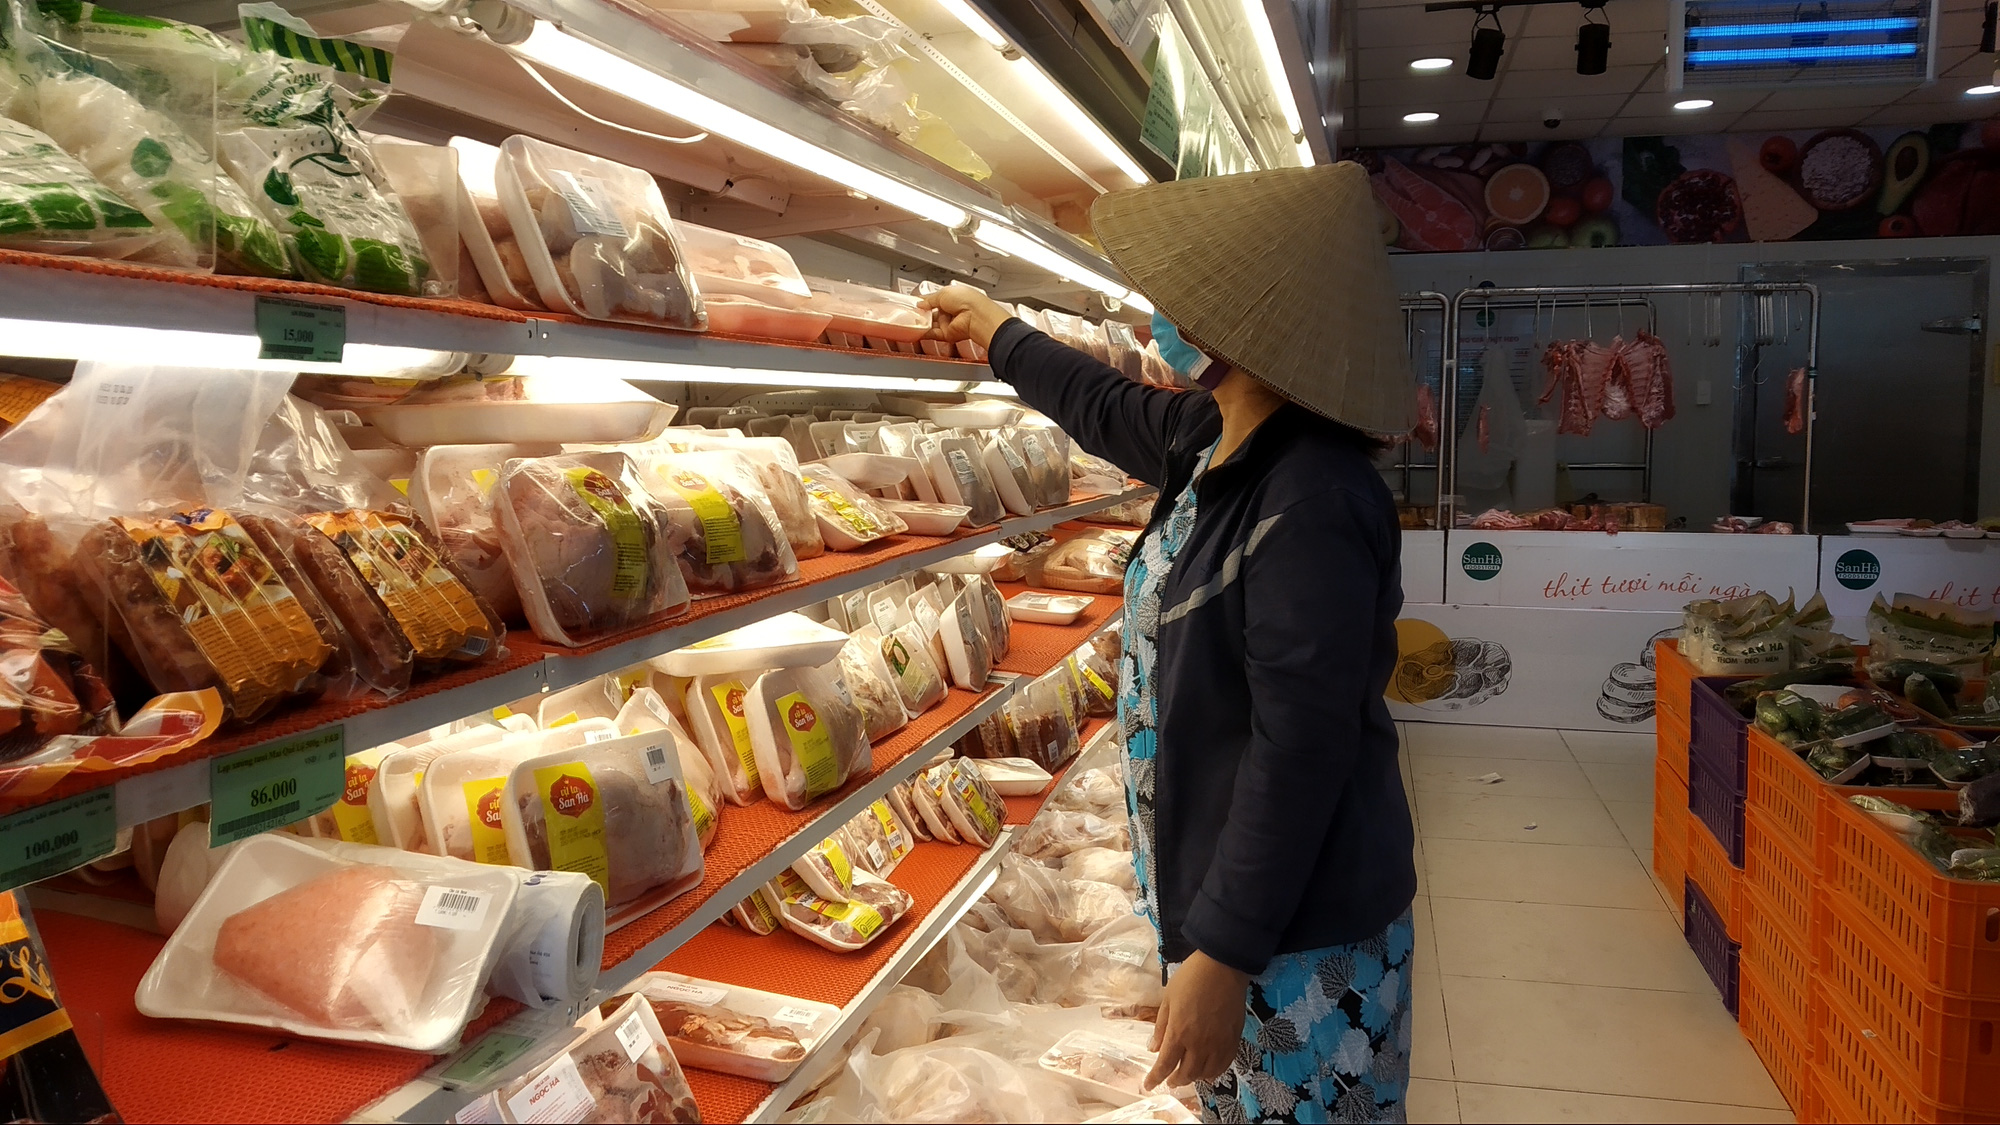 Chợ, siêu thị ở TP HCM đông vui trong 2 ngày nghỉ lễ nhờ giảm giá - Ảnh 2.